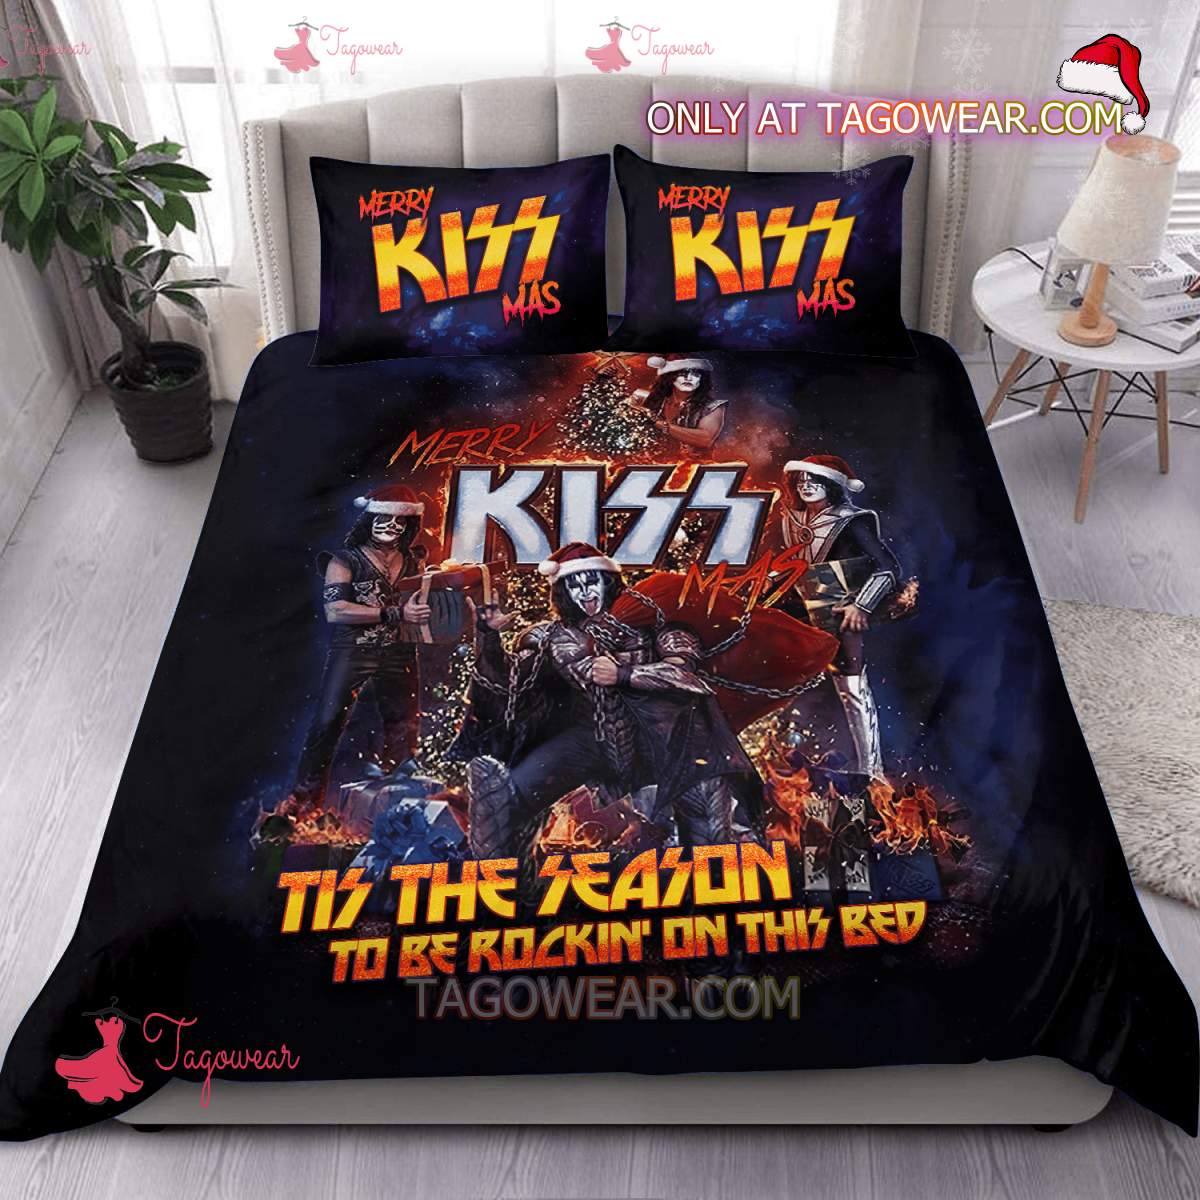 Merry Kiss Mas Tis The Season To Be Rockin' On This Bed Bedding Set